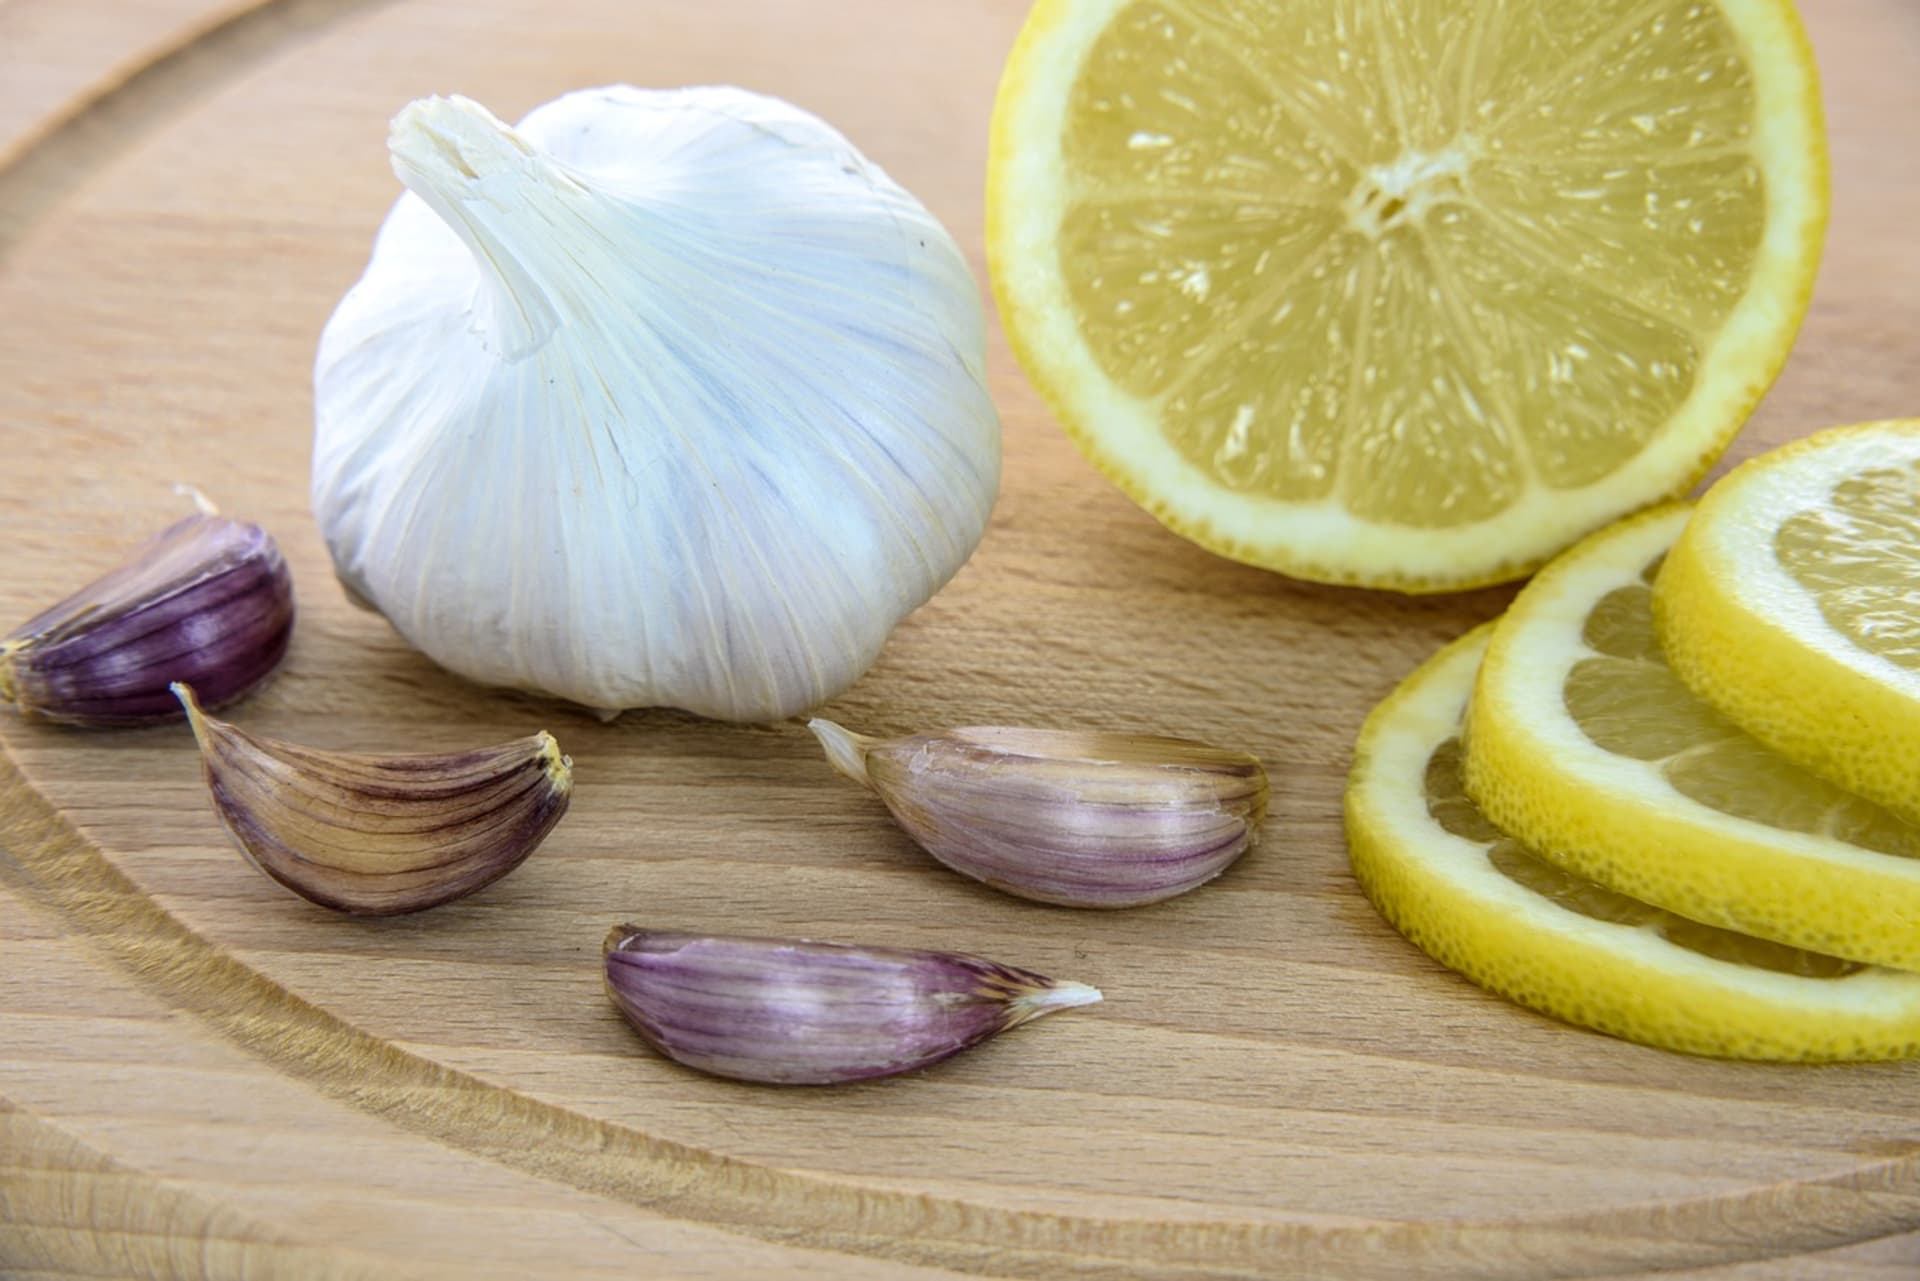 Česnek a citron pomáhají při léčbě nachlazení